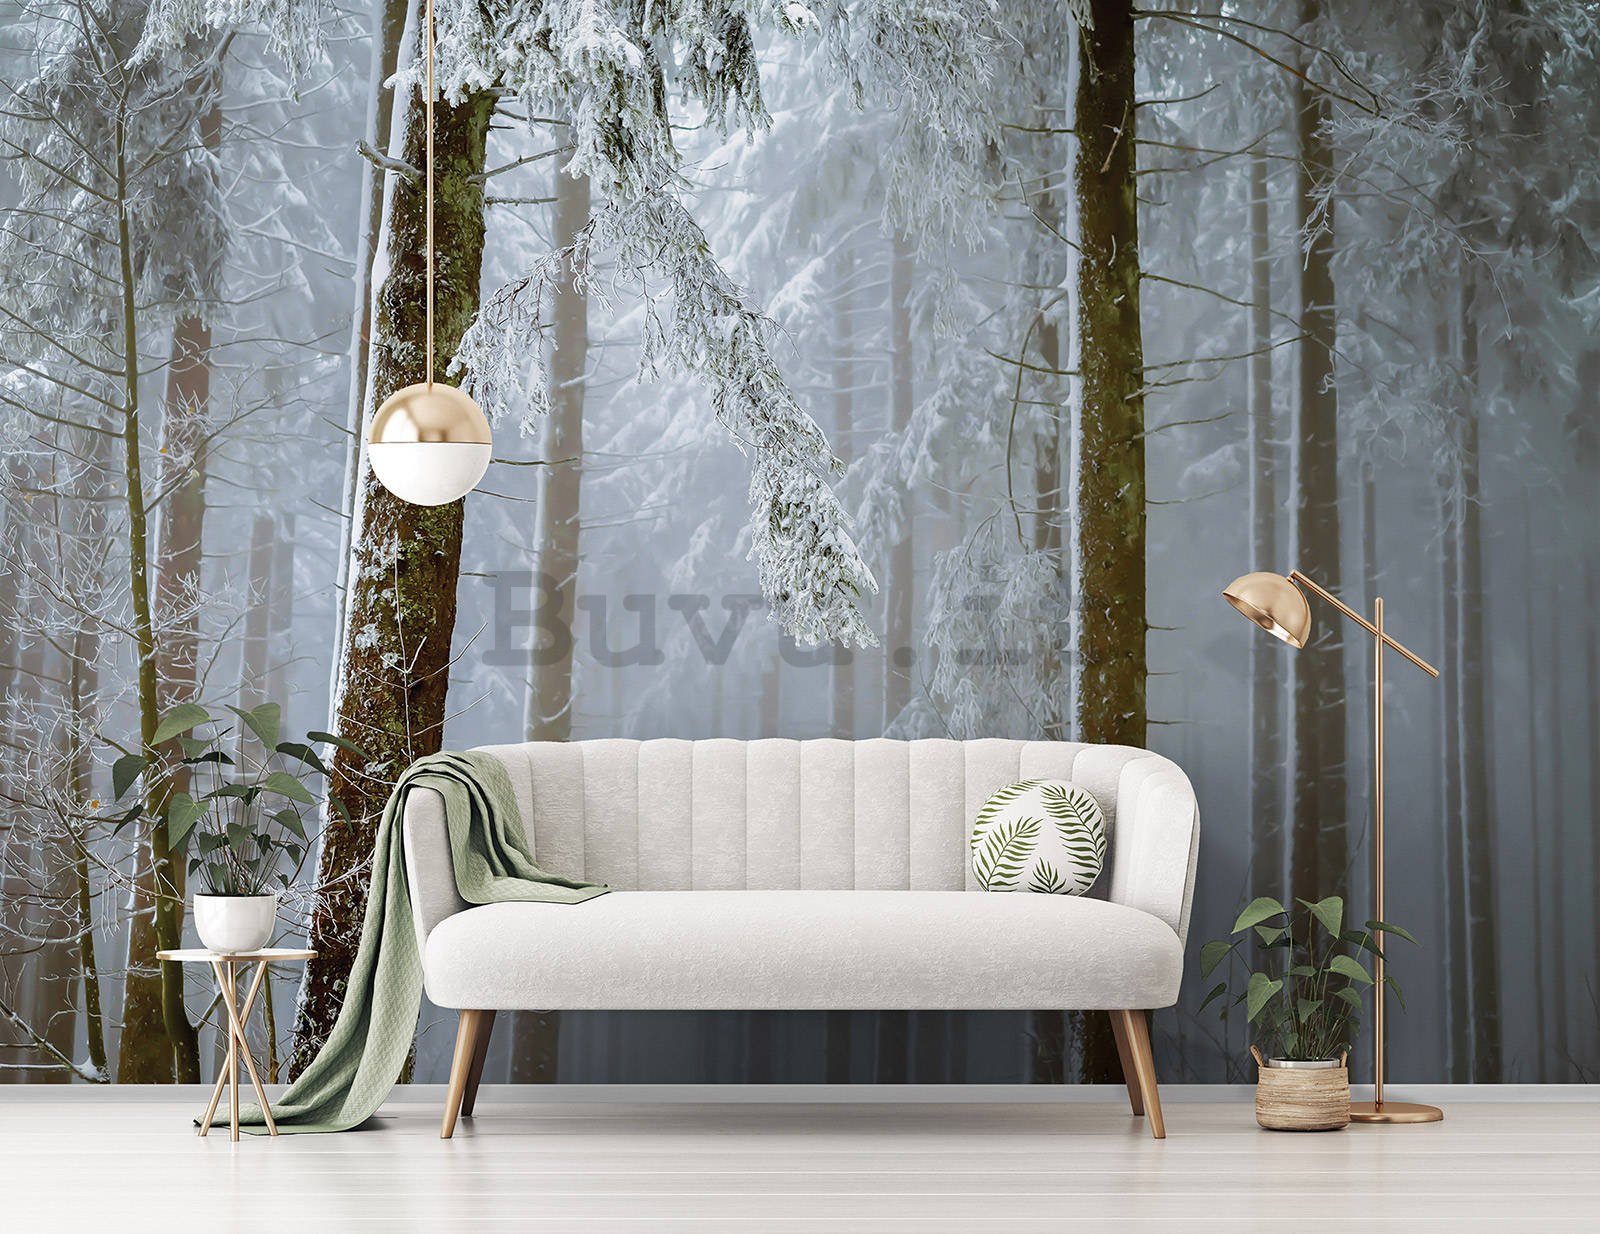 Fotomurale in TNT: Foresta di conifere coperta di neve - 416x254 cm